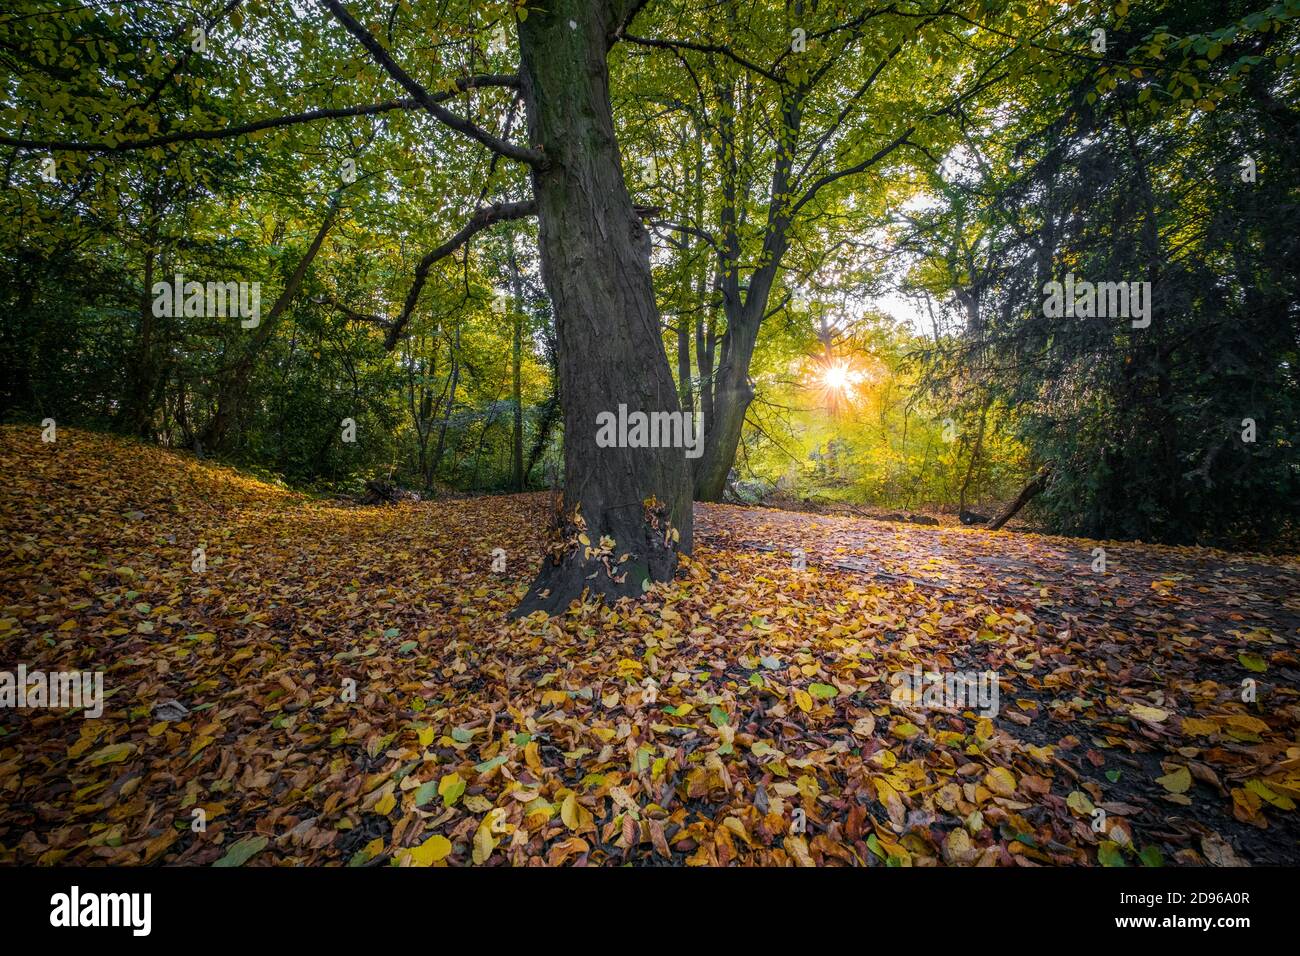 Europa, Großbritannien, England, niedriges Sonnenlicht durch Herbstblätter in Buchenwäldern, gefallene Blätter auf dem Boden, keine Menschen Stockfoto